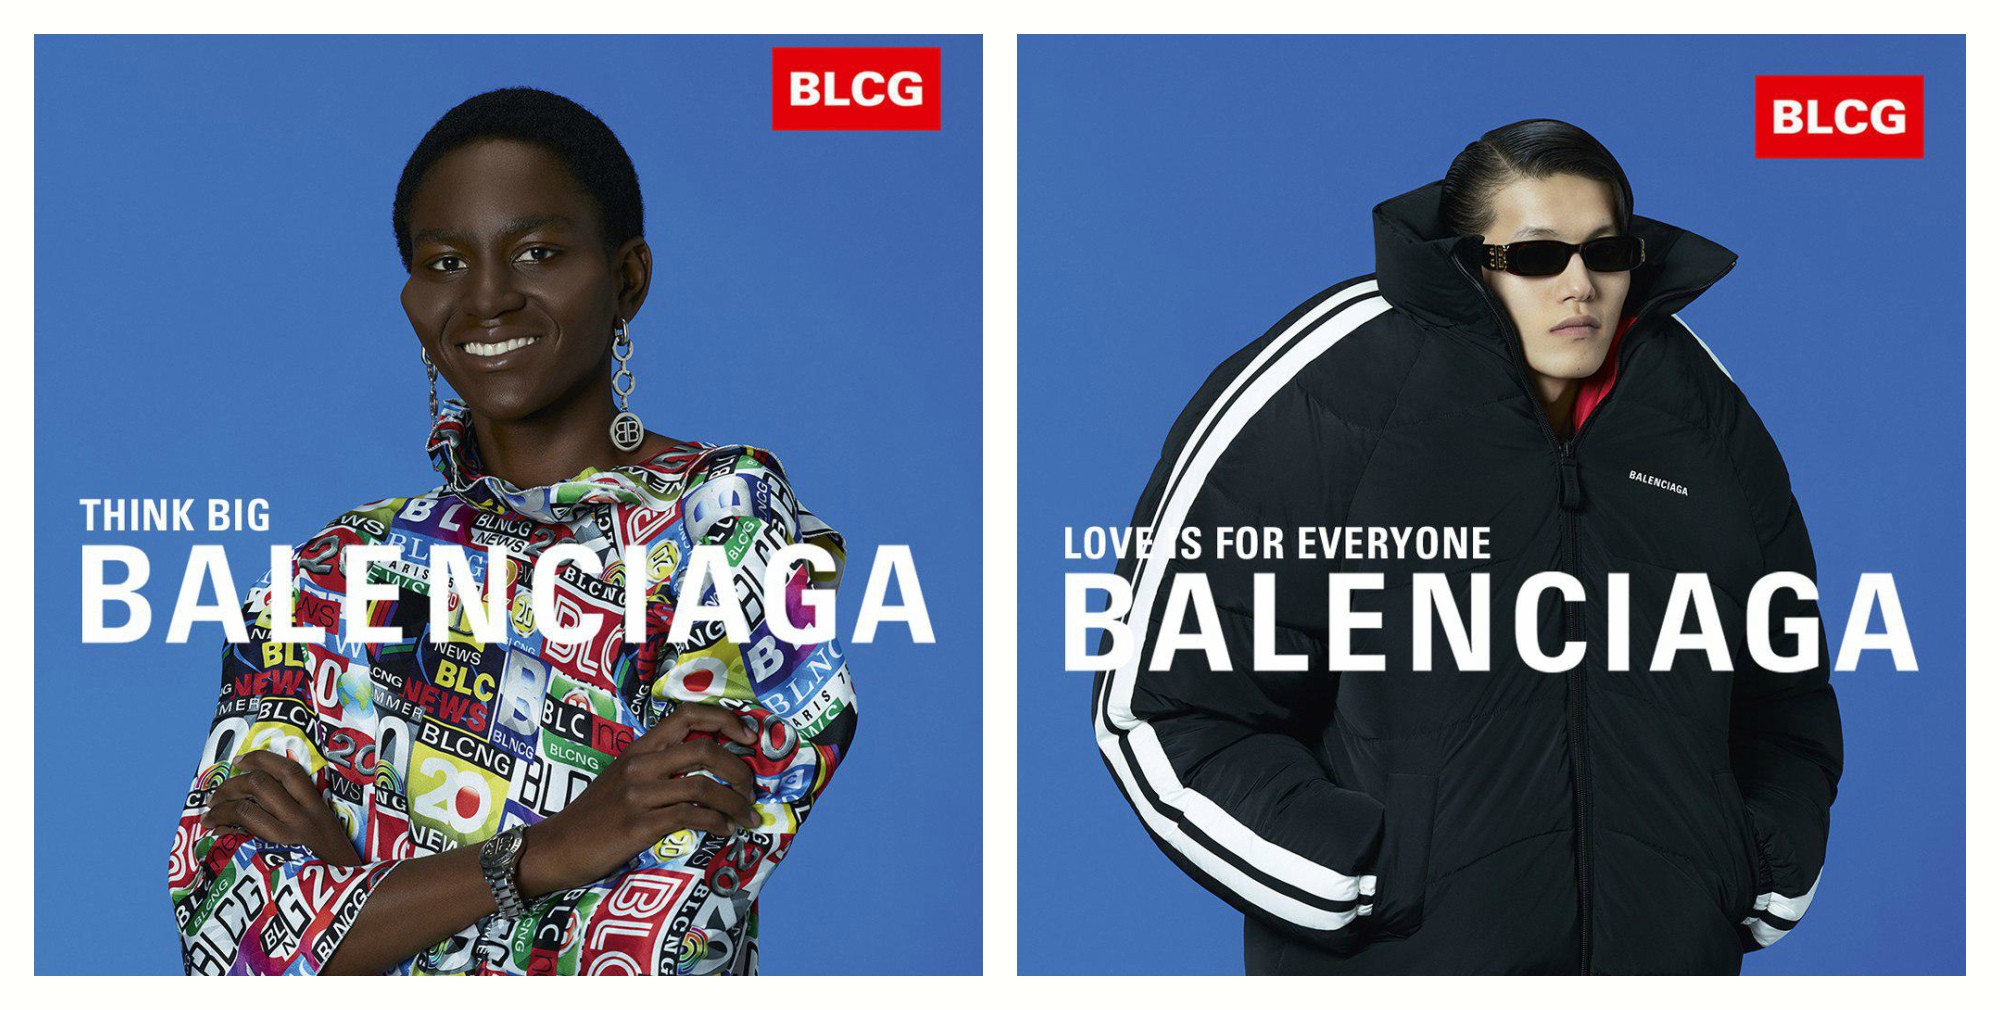 «Любовь для всех» — в новой коллекции Balenciaga